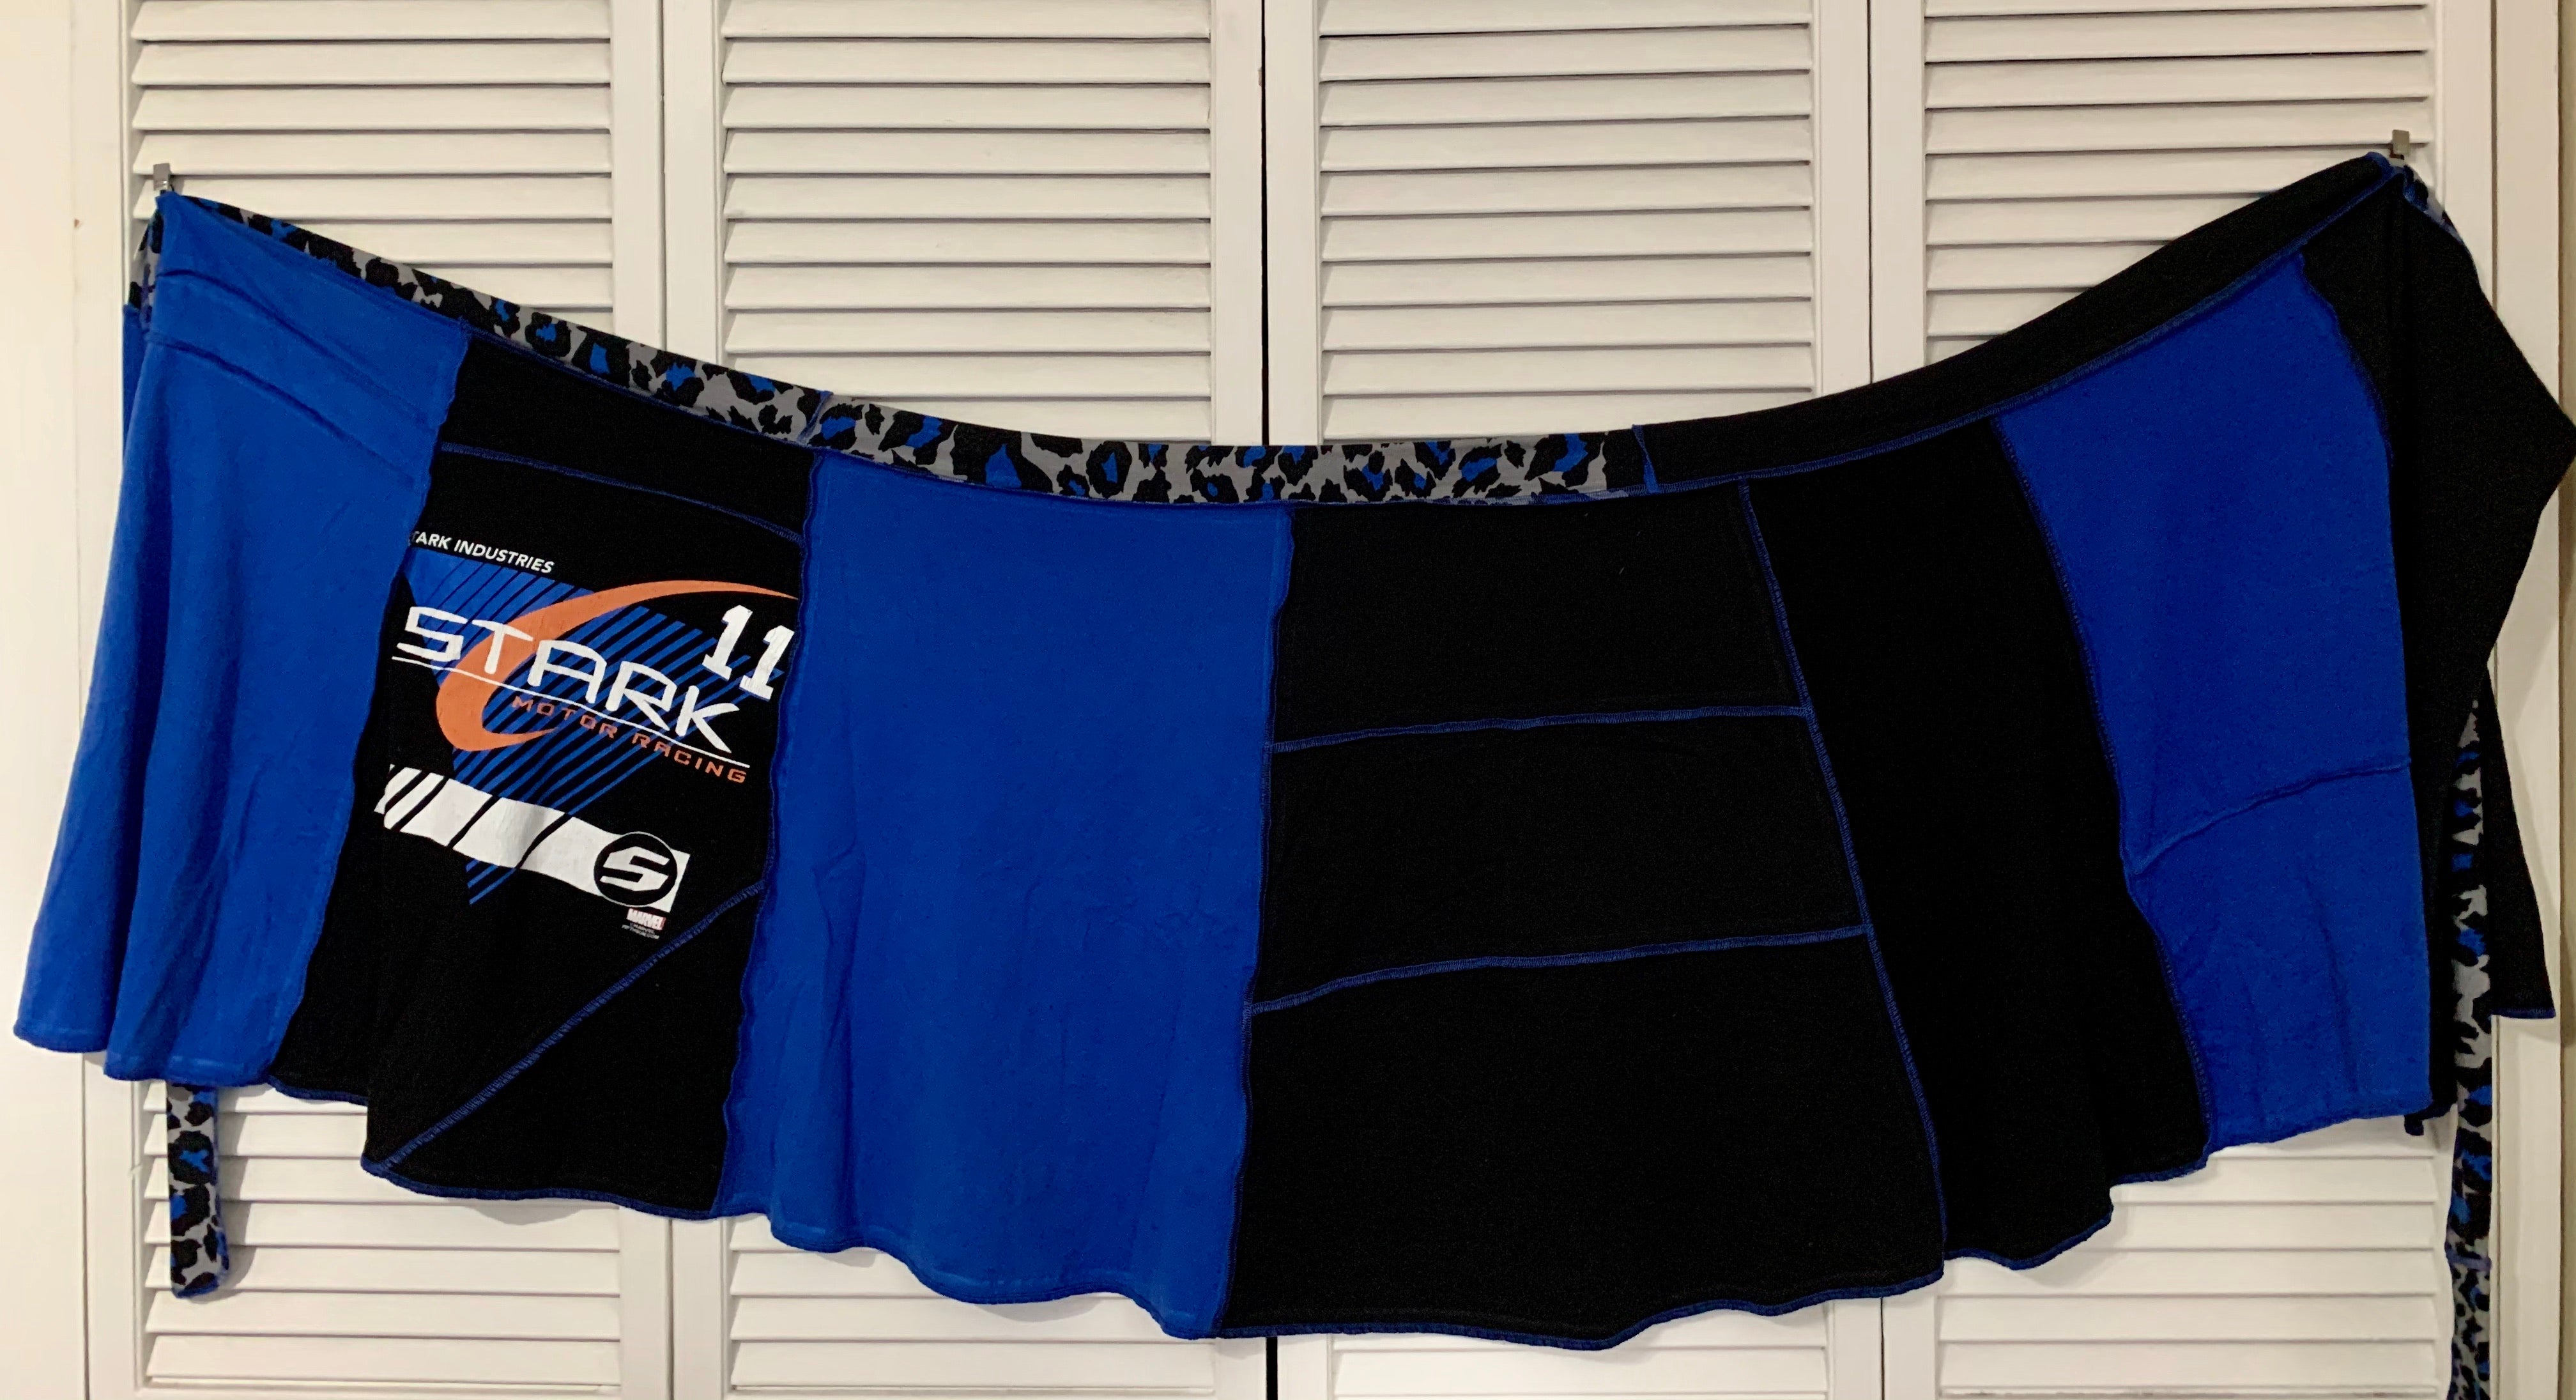 Stark Racing Upcycled T-shirt Wrap Skirt